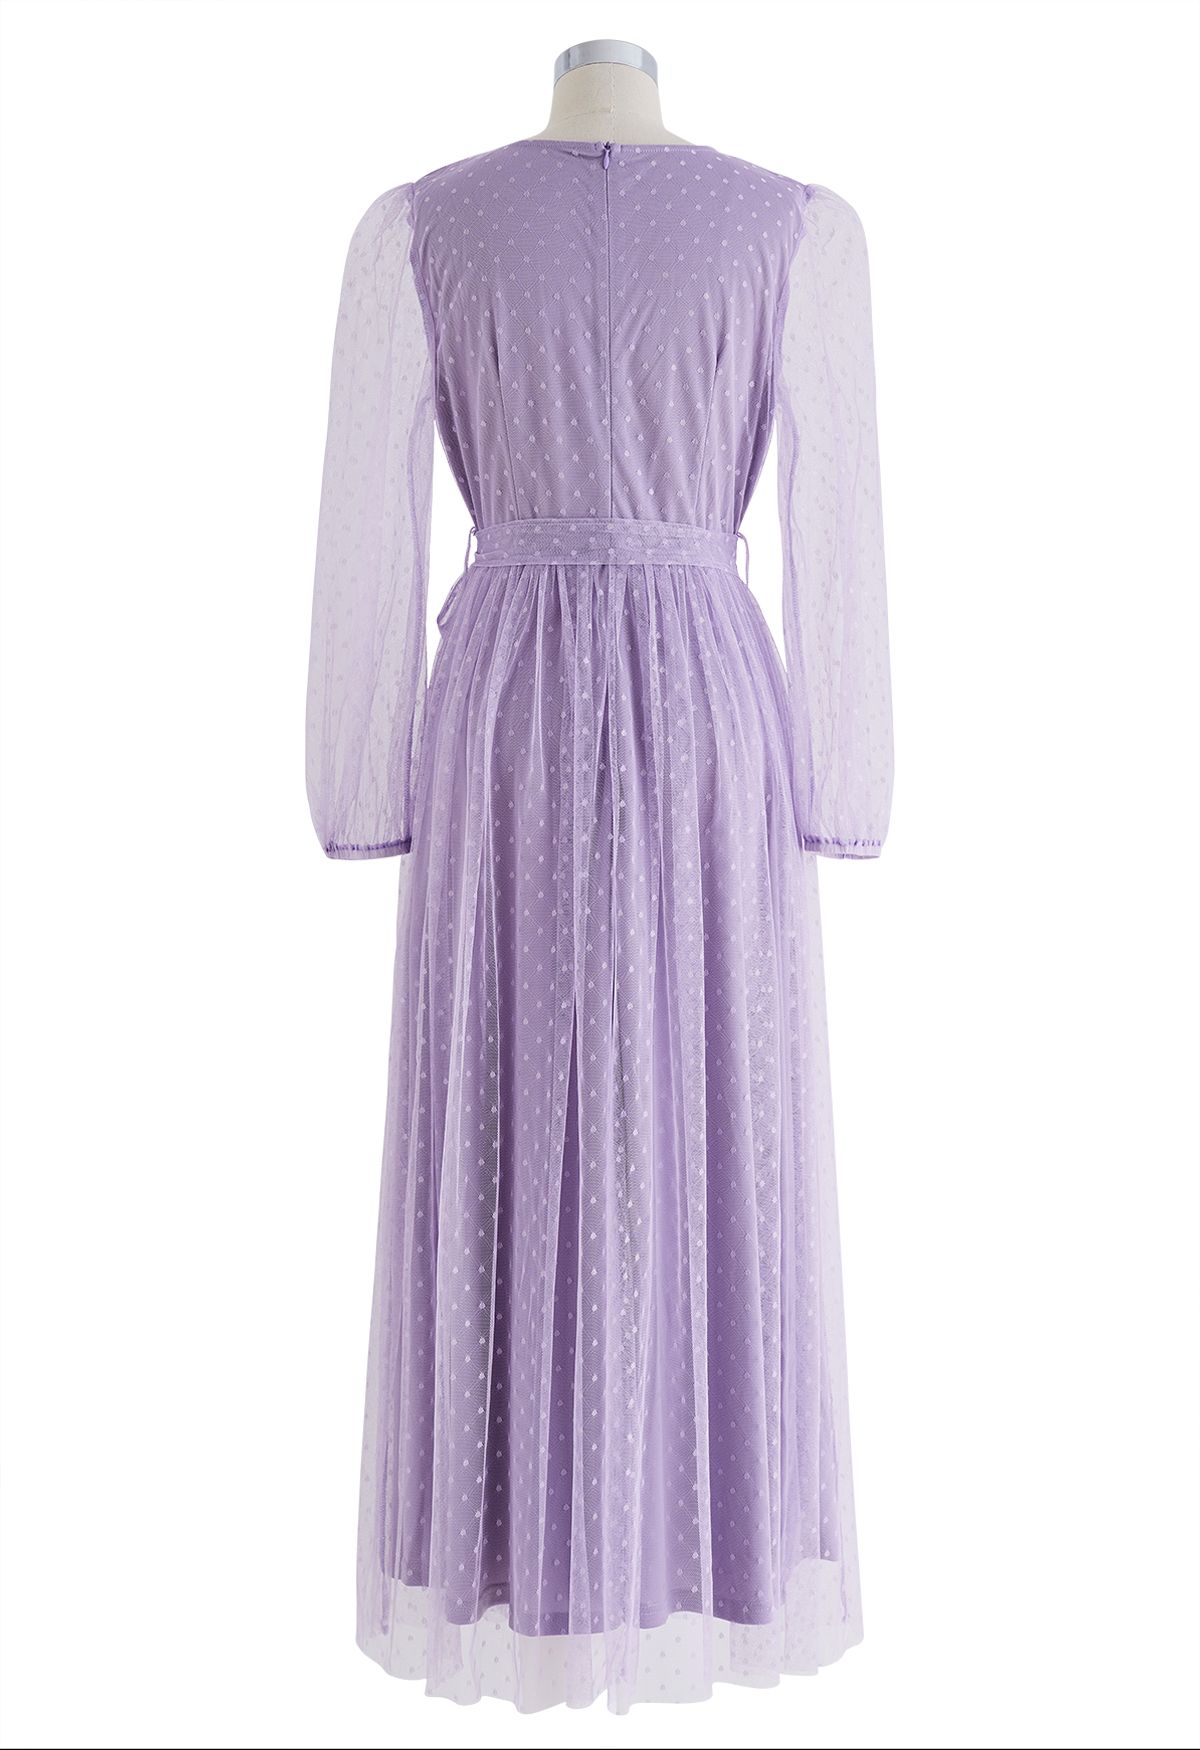 Precioso vestido largo de malla con puntos en lila